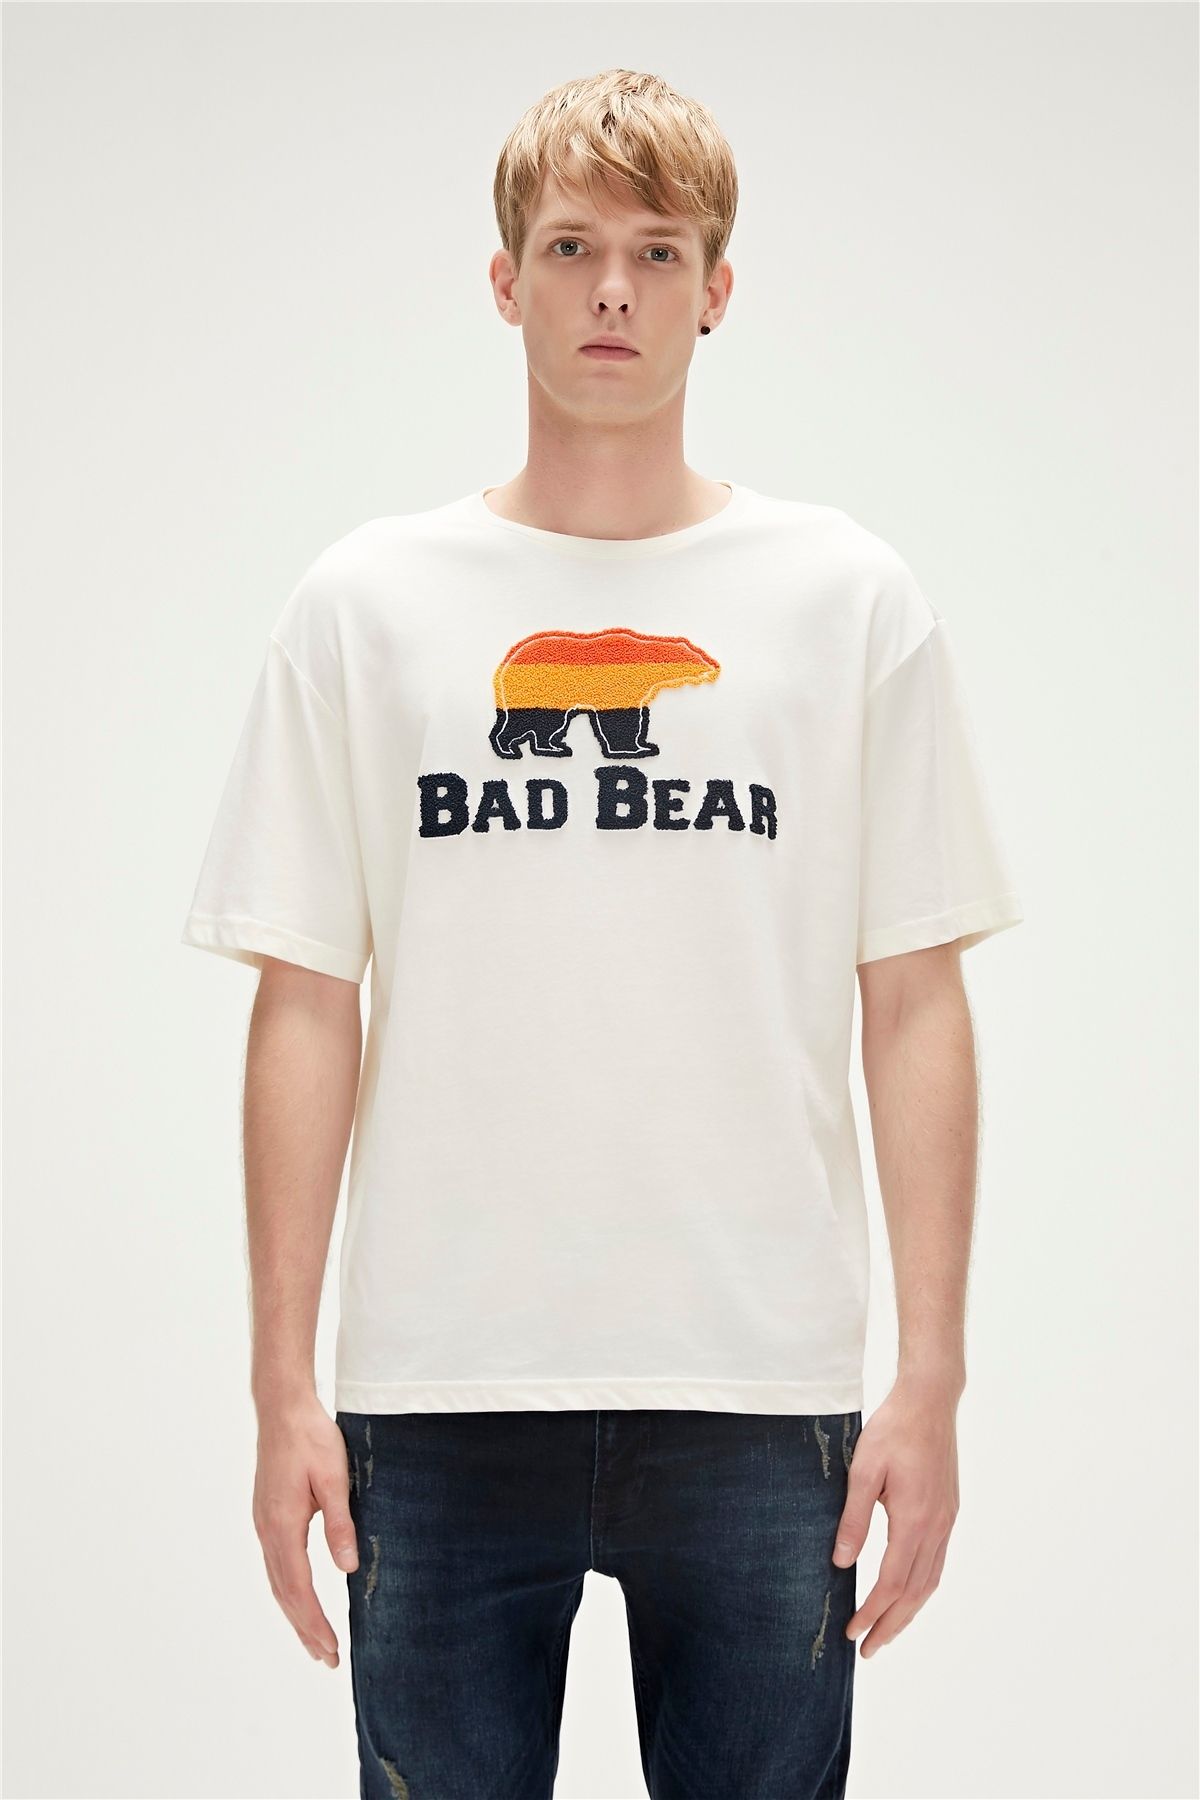 Bad Bear 23.01.07.027-c04 Tripart Erkek T-shirt